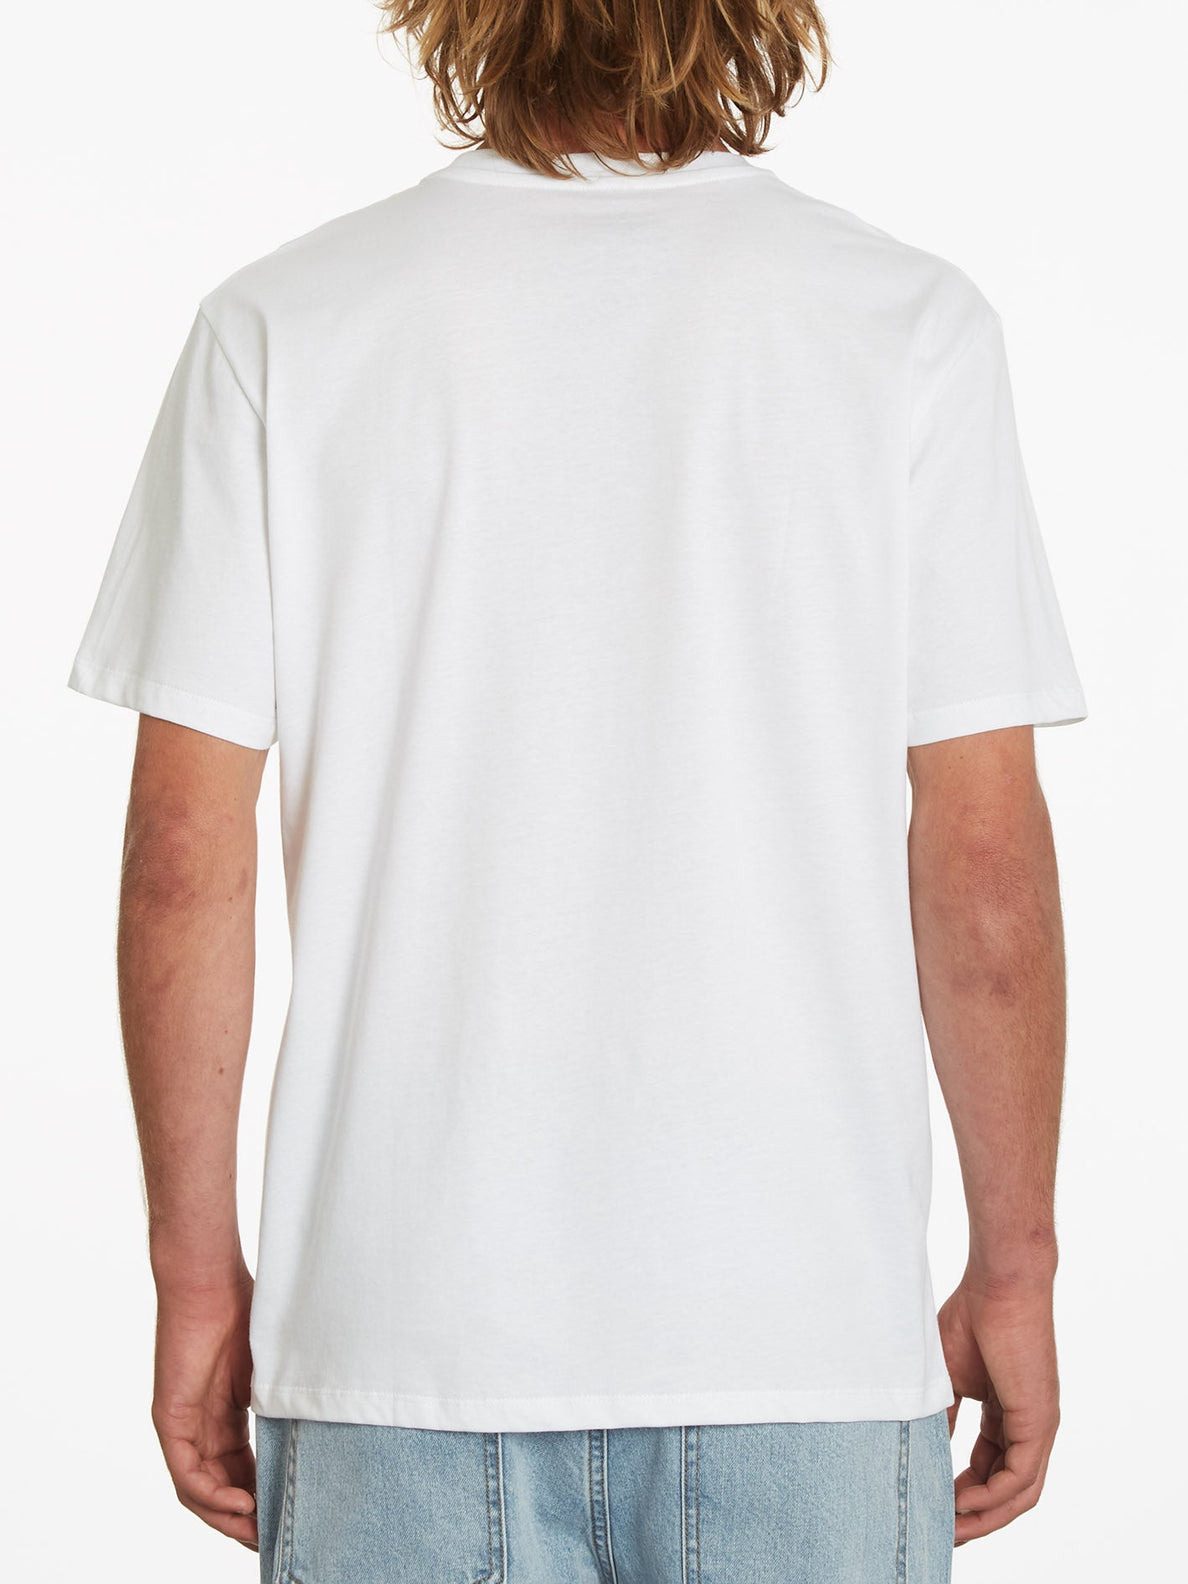 Preacher T-shirt - WHITE (A3532217_WHT) [B]